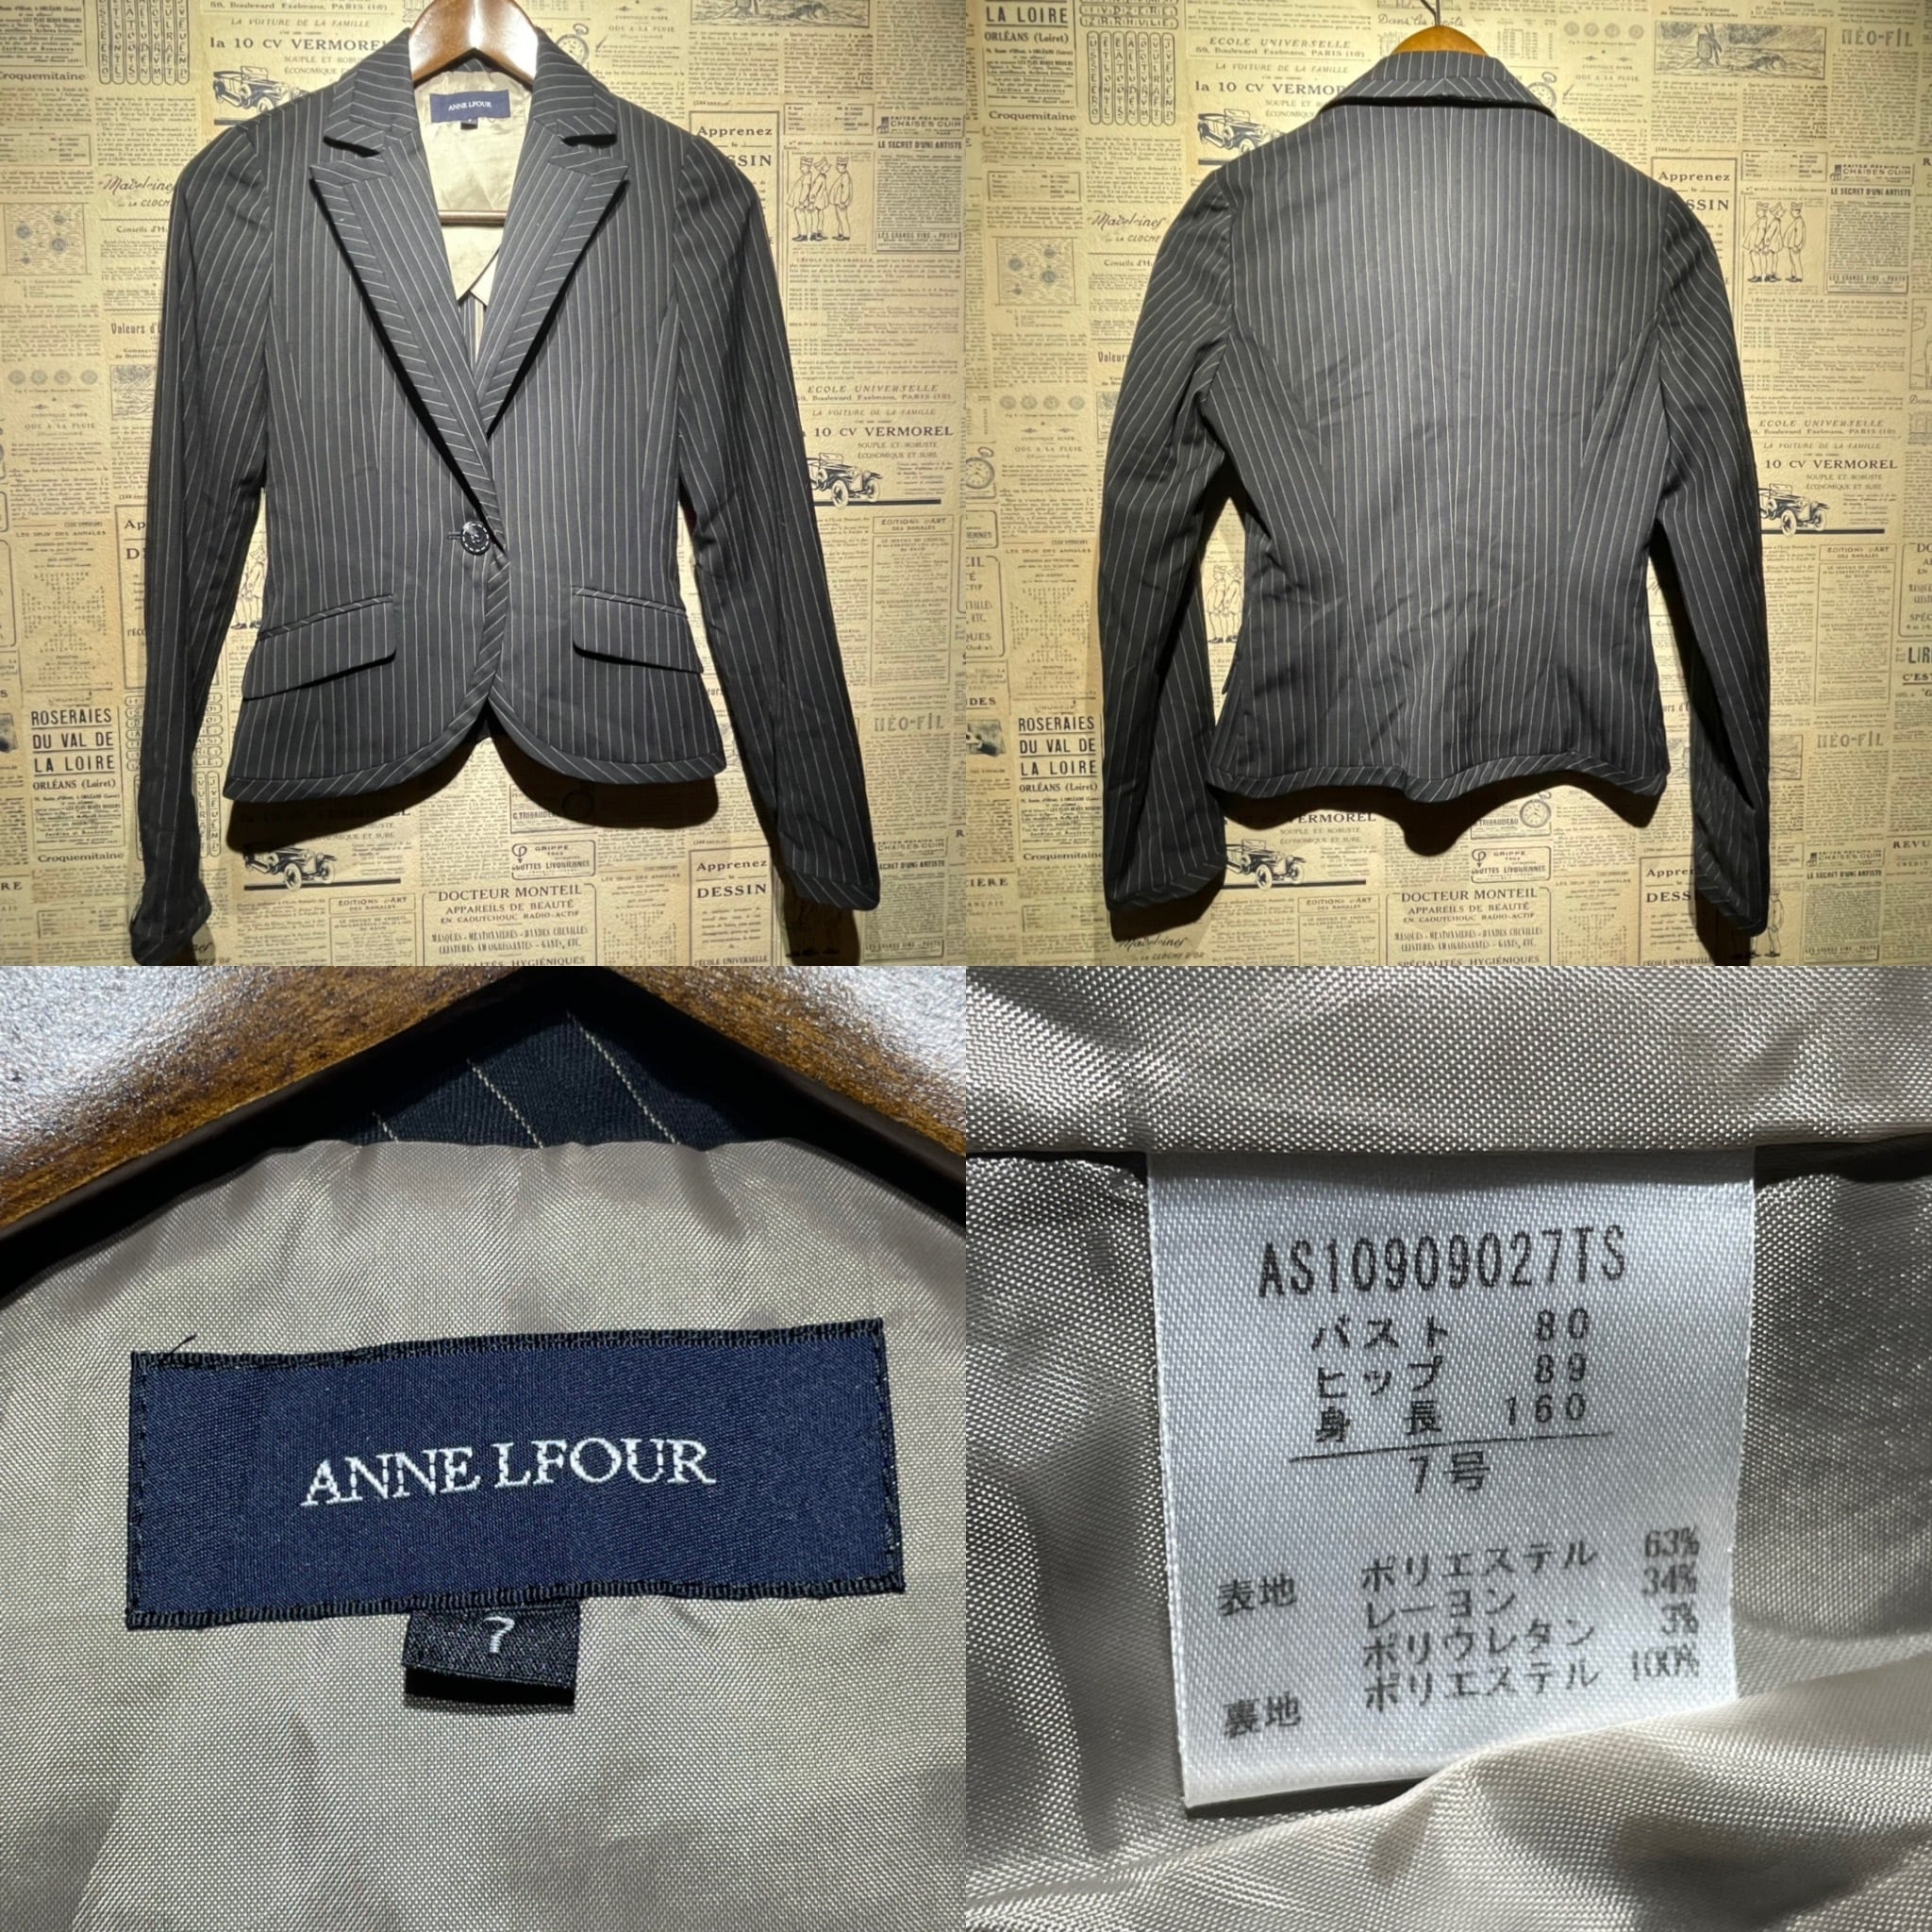 ANNE LFOUR スーツ セットアップ パンツ スカート size 7レディース